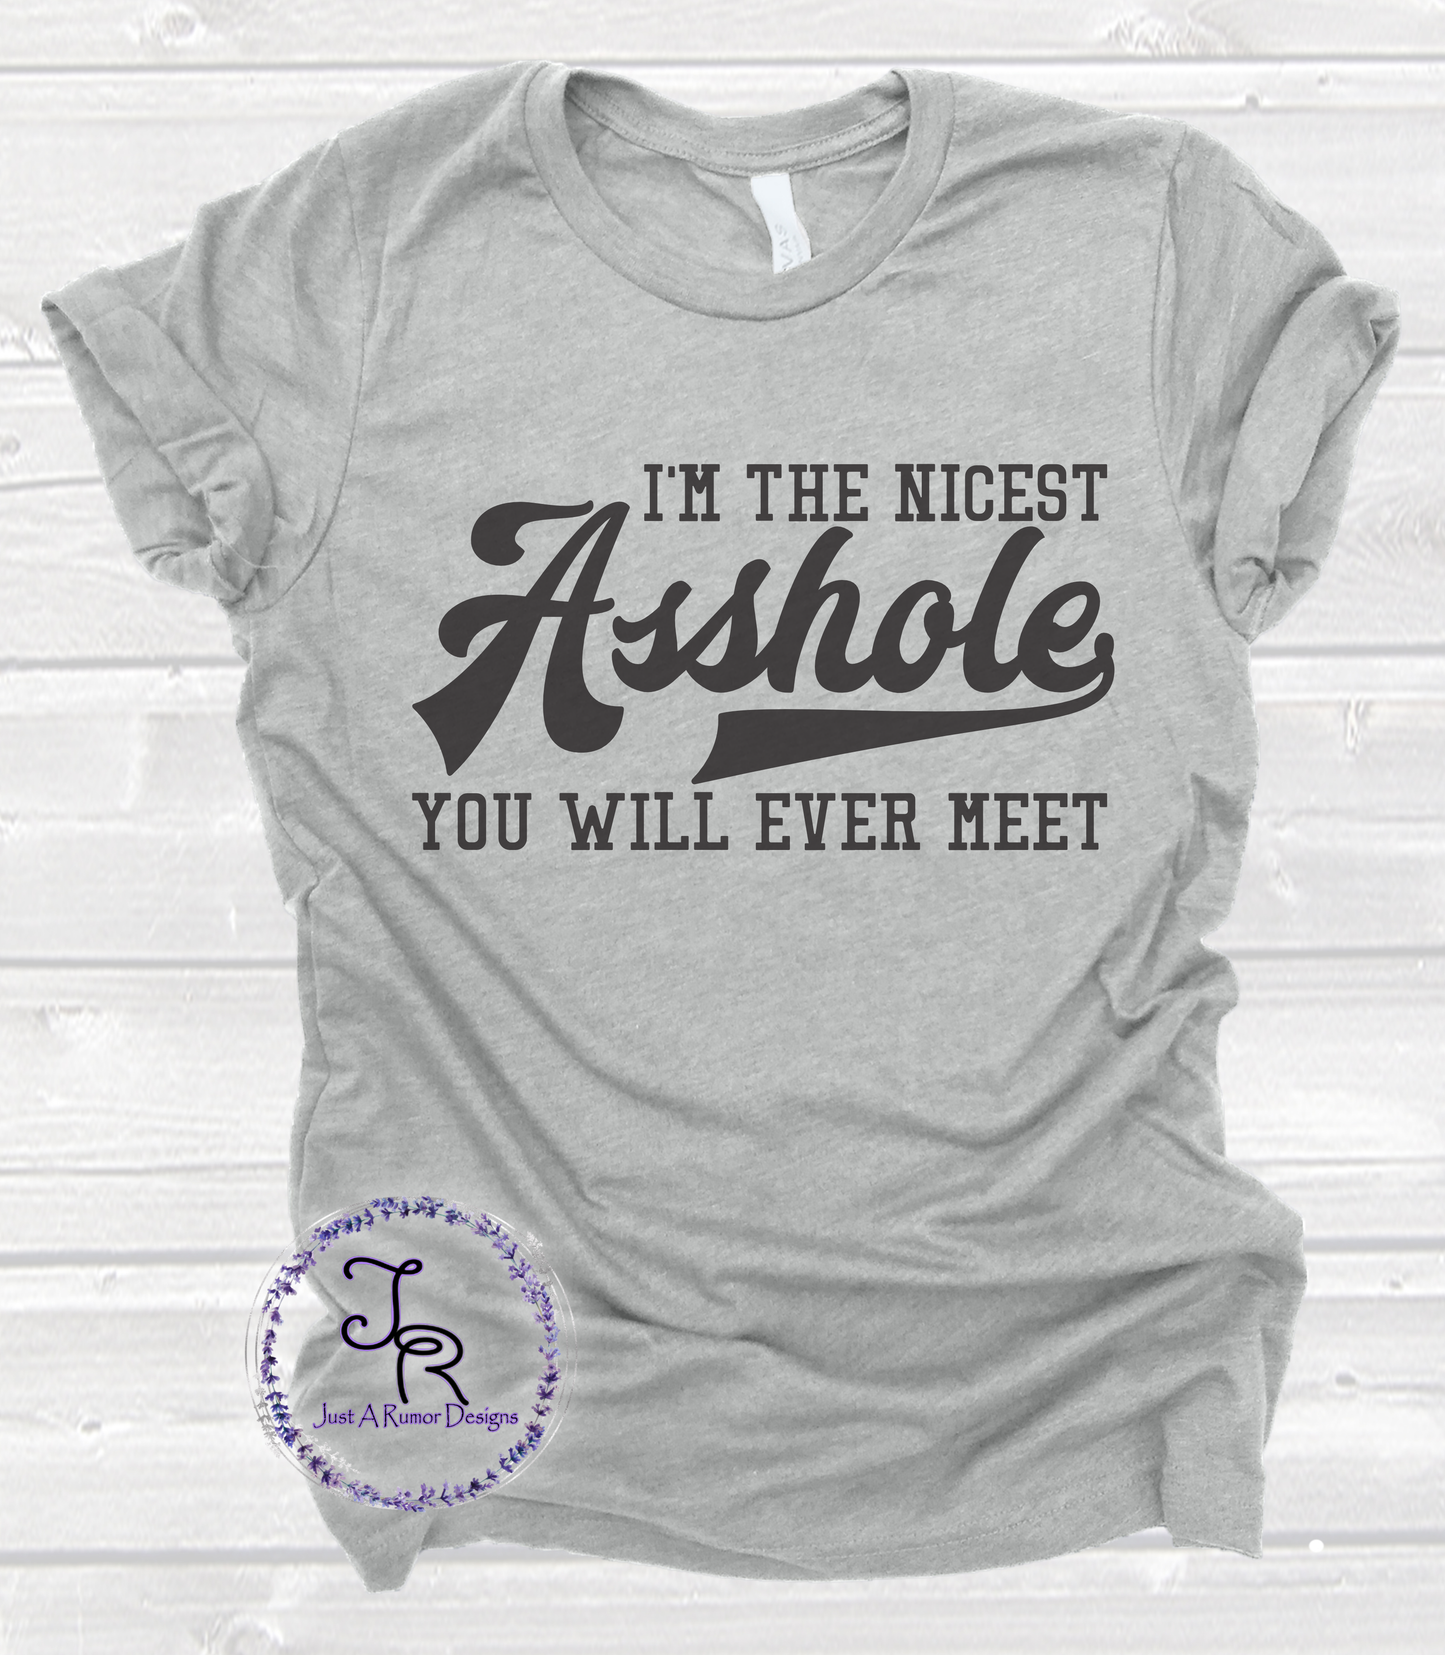 Nicest Asshole Shirt